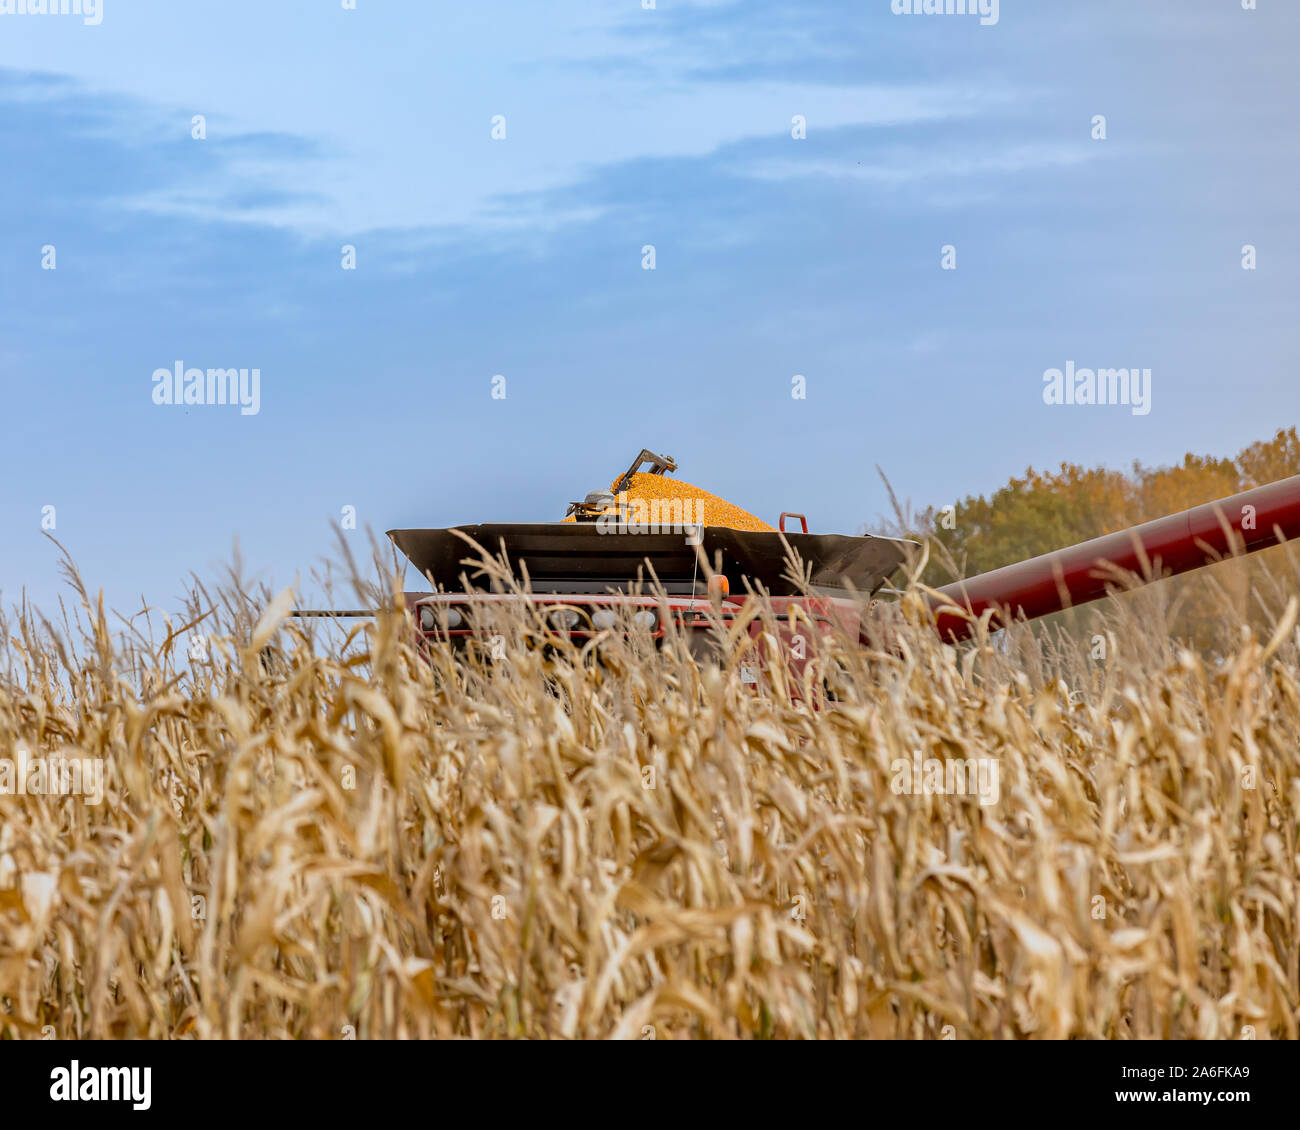 Vue unique sur le haut de la moissonneuse-batteuse avec bac rempli de grains de maïs égrené se lever au-dessus des rangées de tiges pendant la récolte de blé. Saison de récolte Banque D'Images